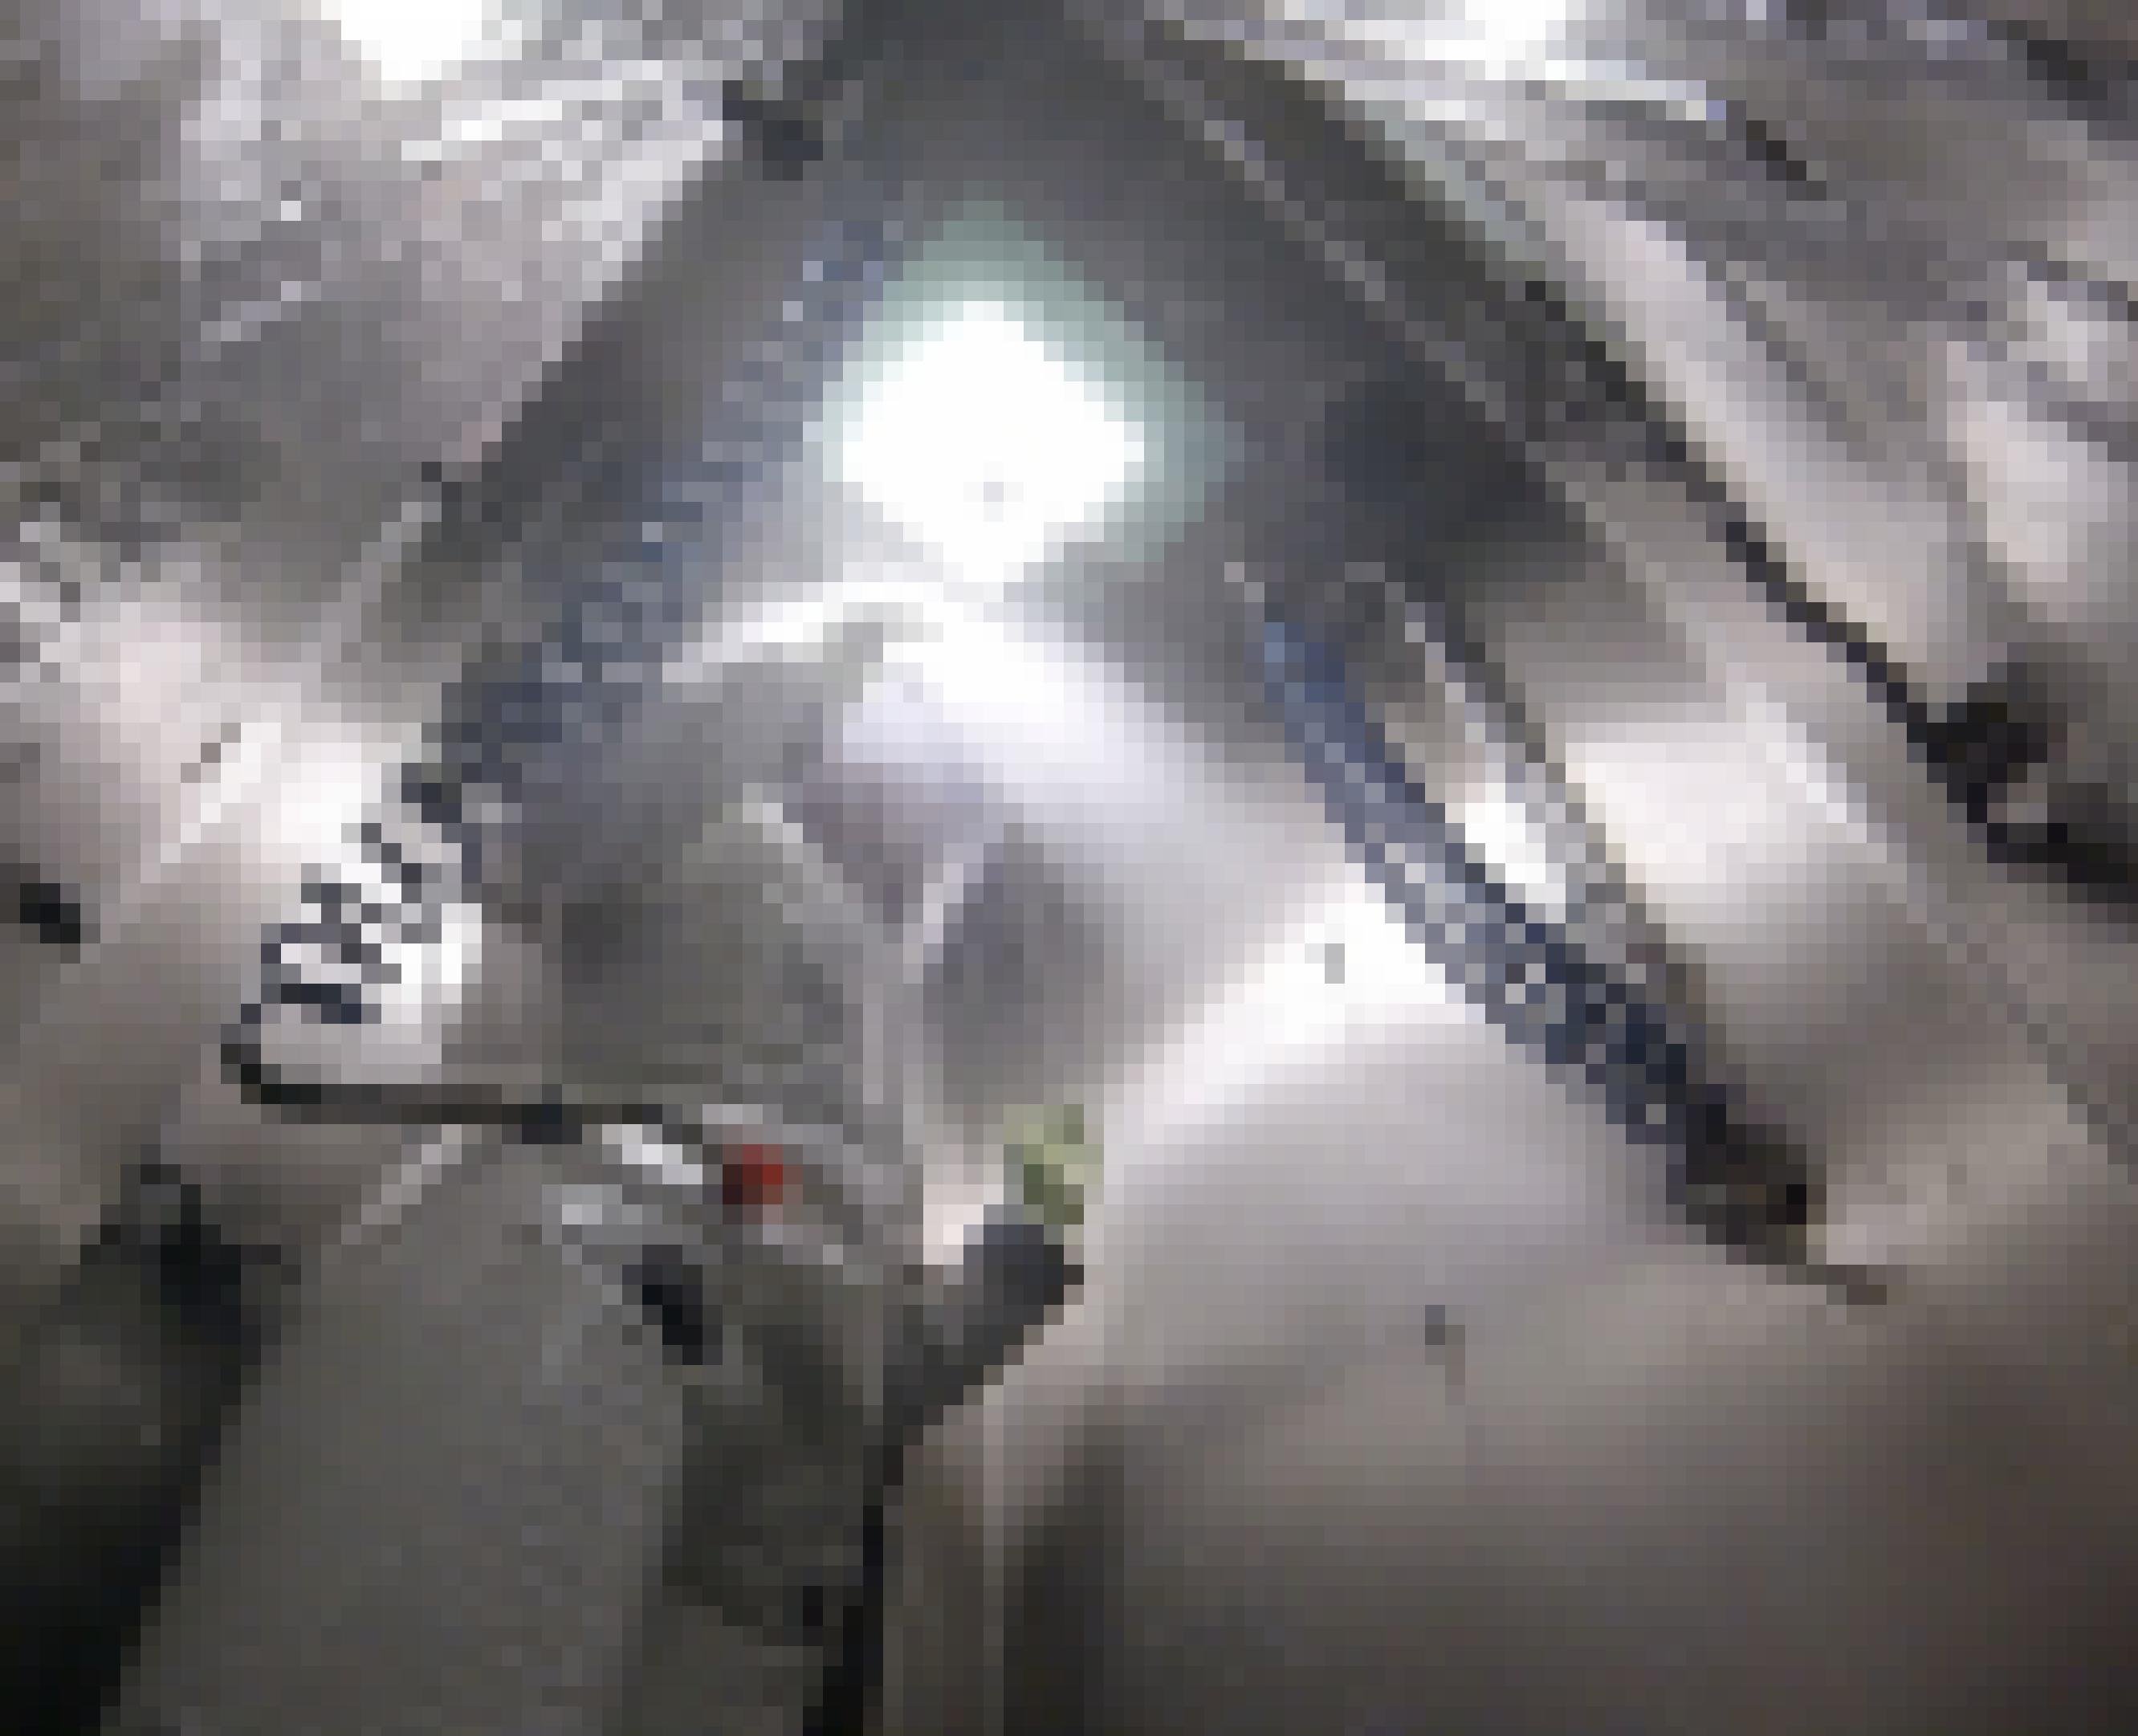 Wie ein Astronaut sieht der Mitarbeiter des Robert Koch-Instituts in seinem Schutzanzug aus, der nach der Arbeit mit gefährlichen Viren in einer engen Duschkabine von oben mit einem flüssigen Desinfektionsmittel besprüht wird.